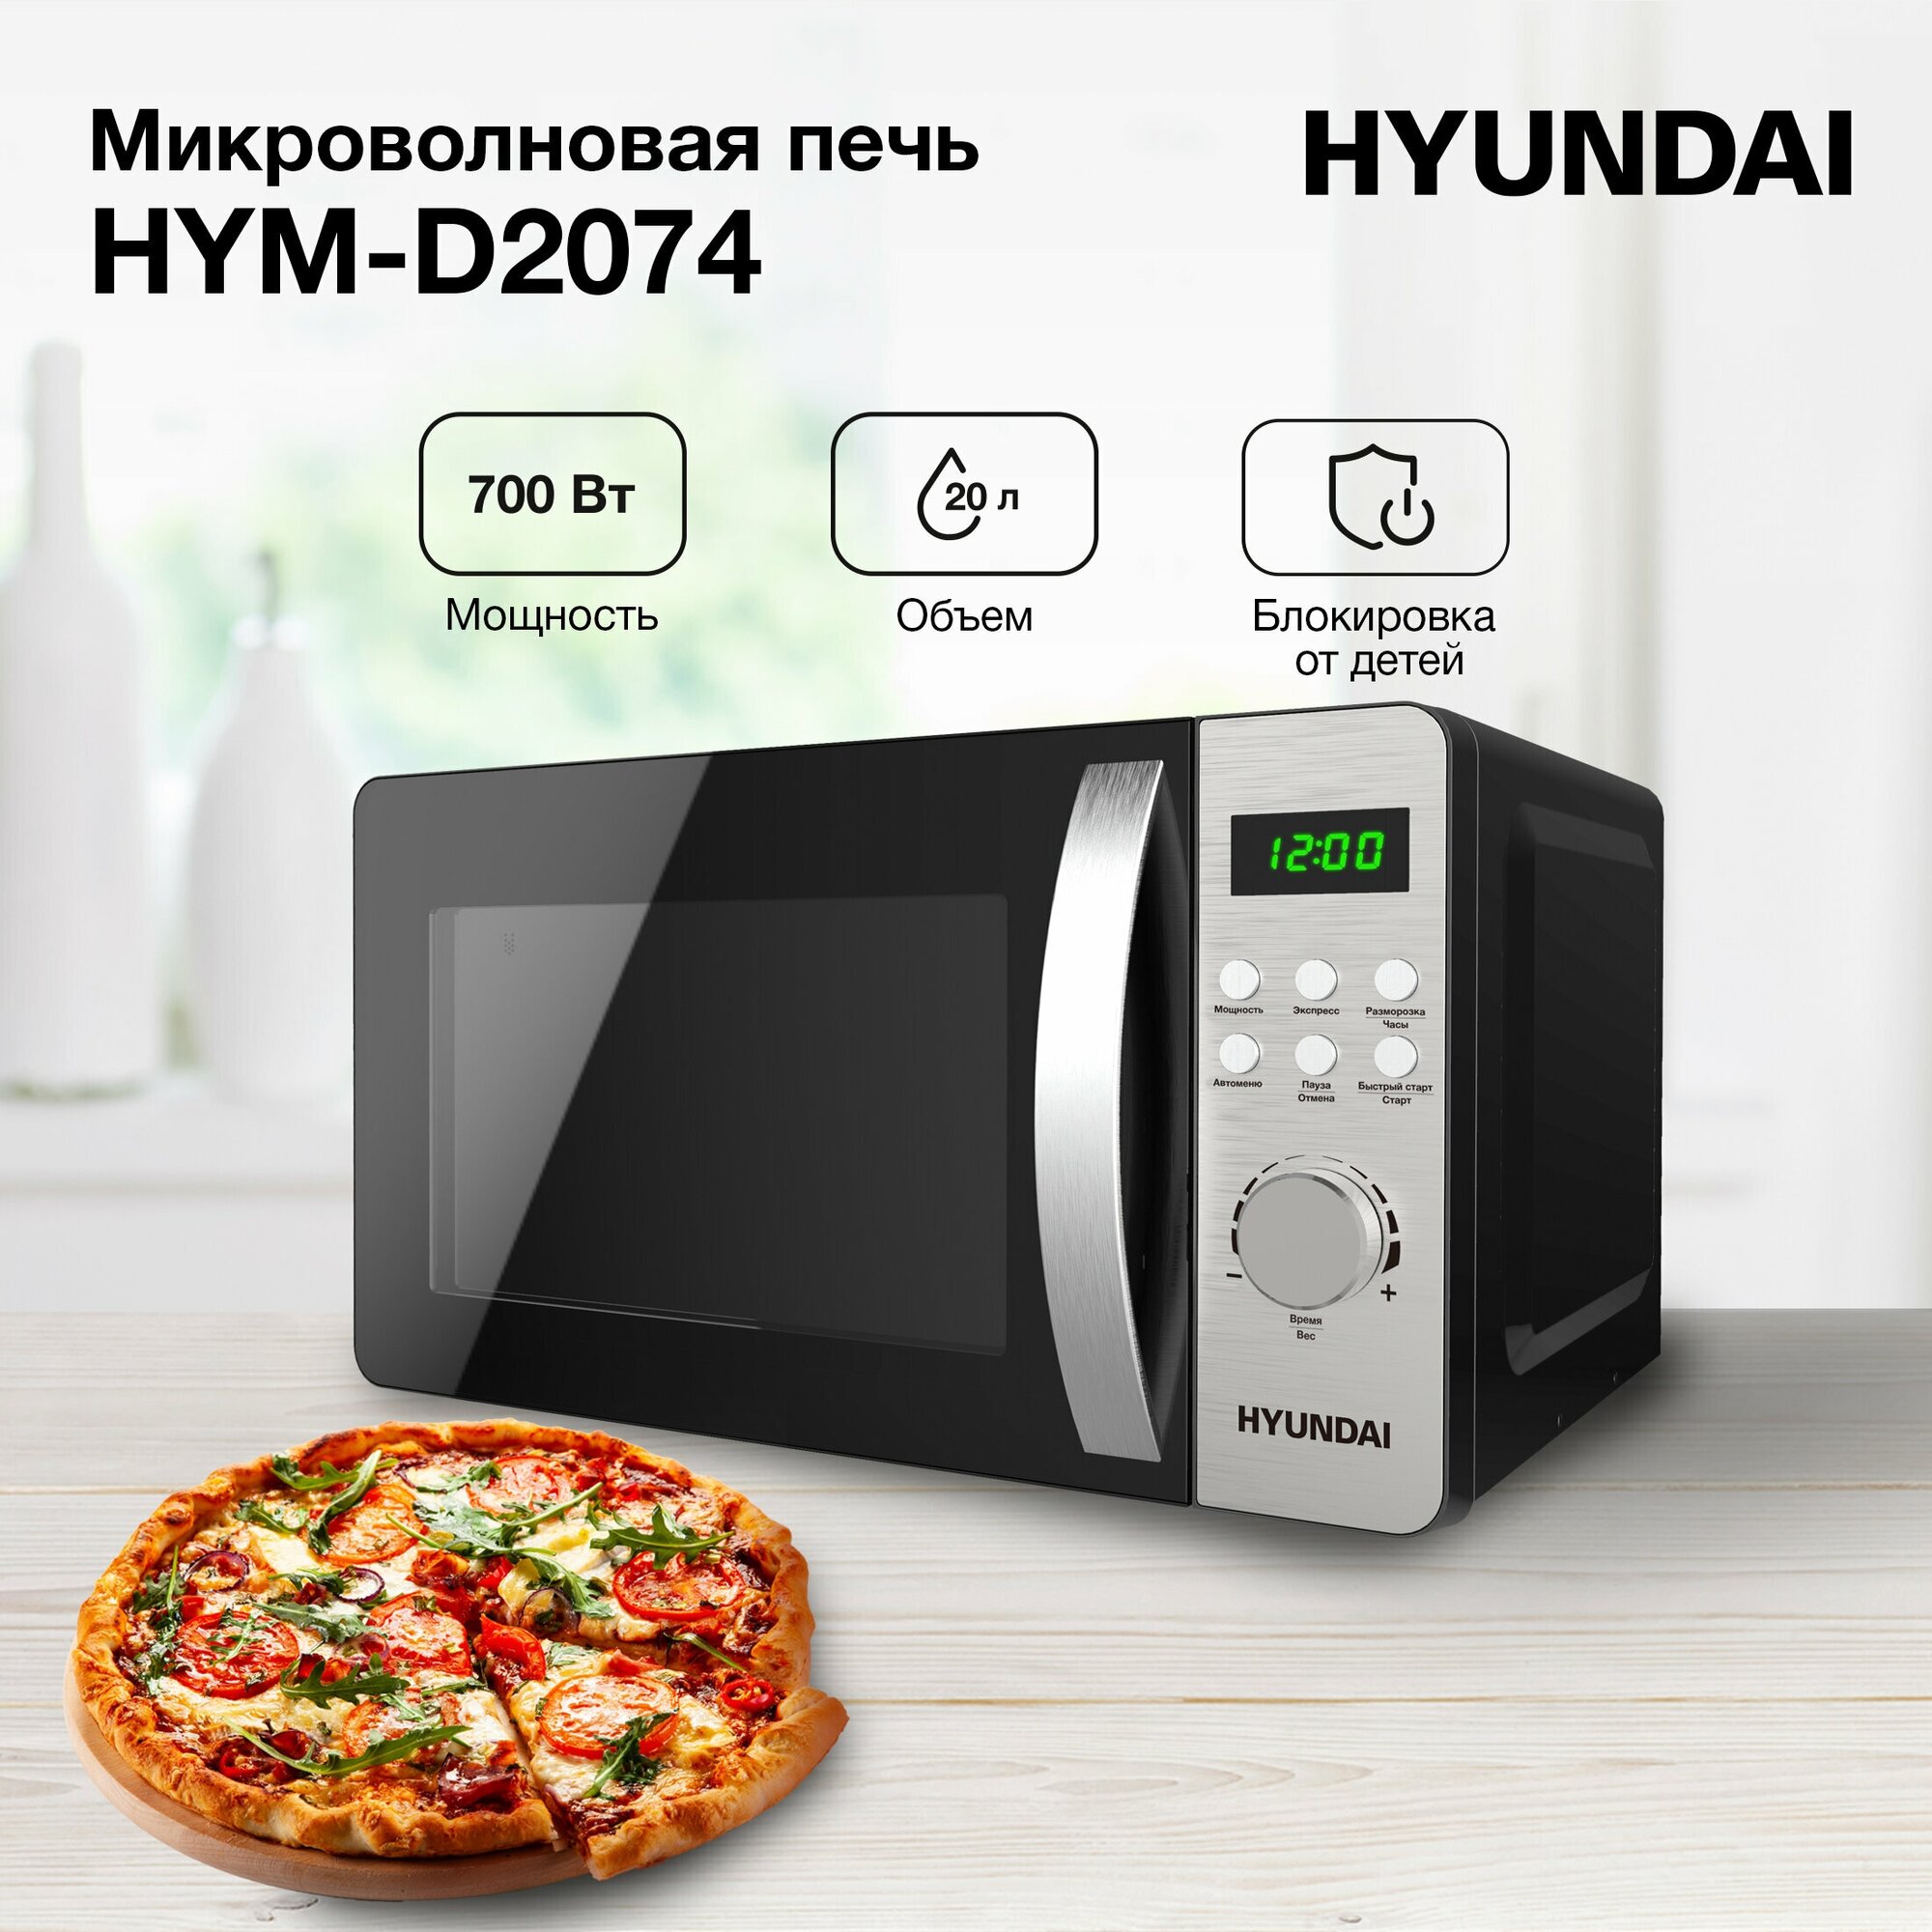 Микроволновая печь Hyundai HYM-D2074, 700Вт, 20л, черный /серебристый - фотография № 2